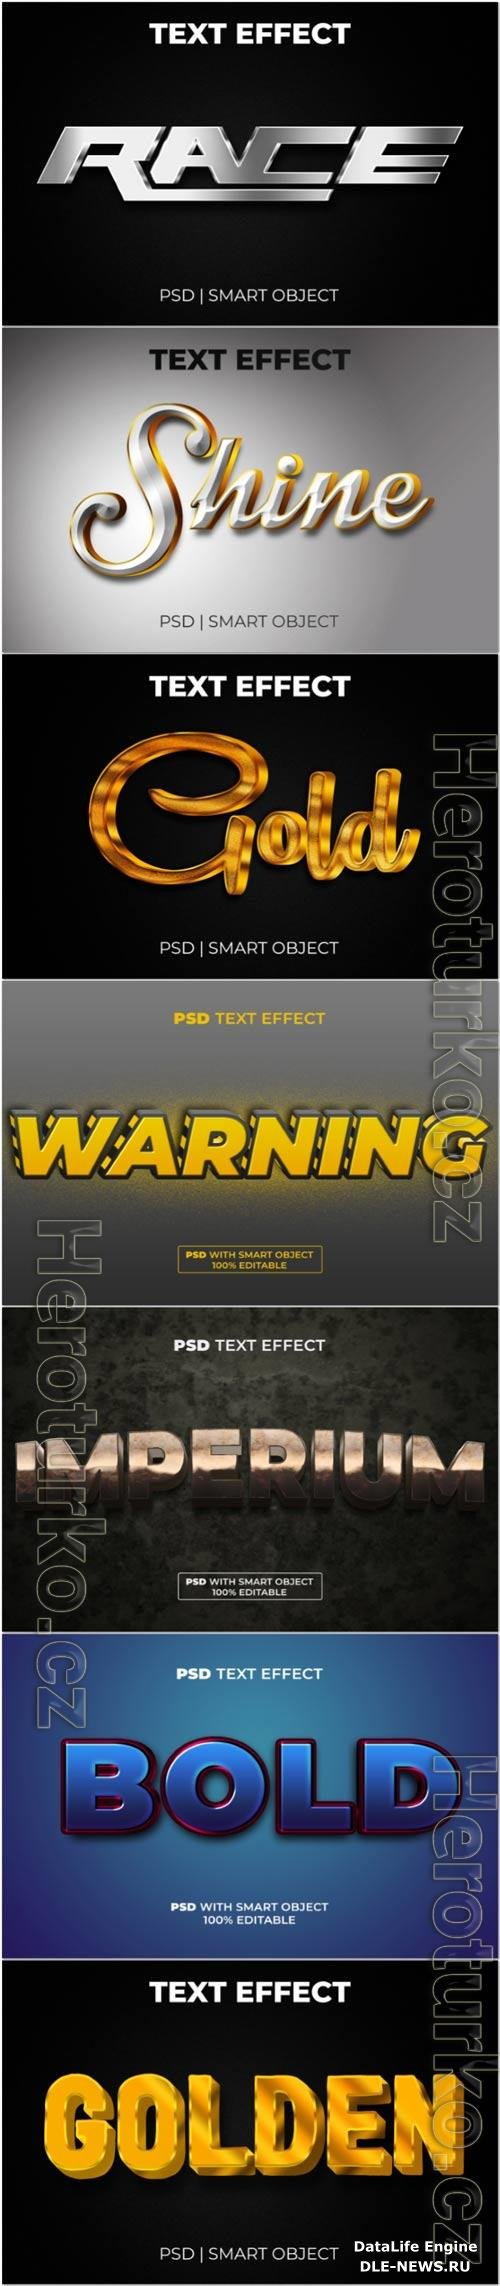 Psd text effect set vol 317